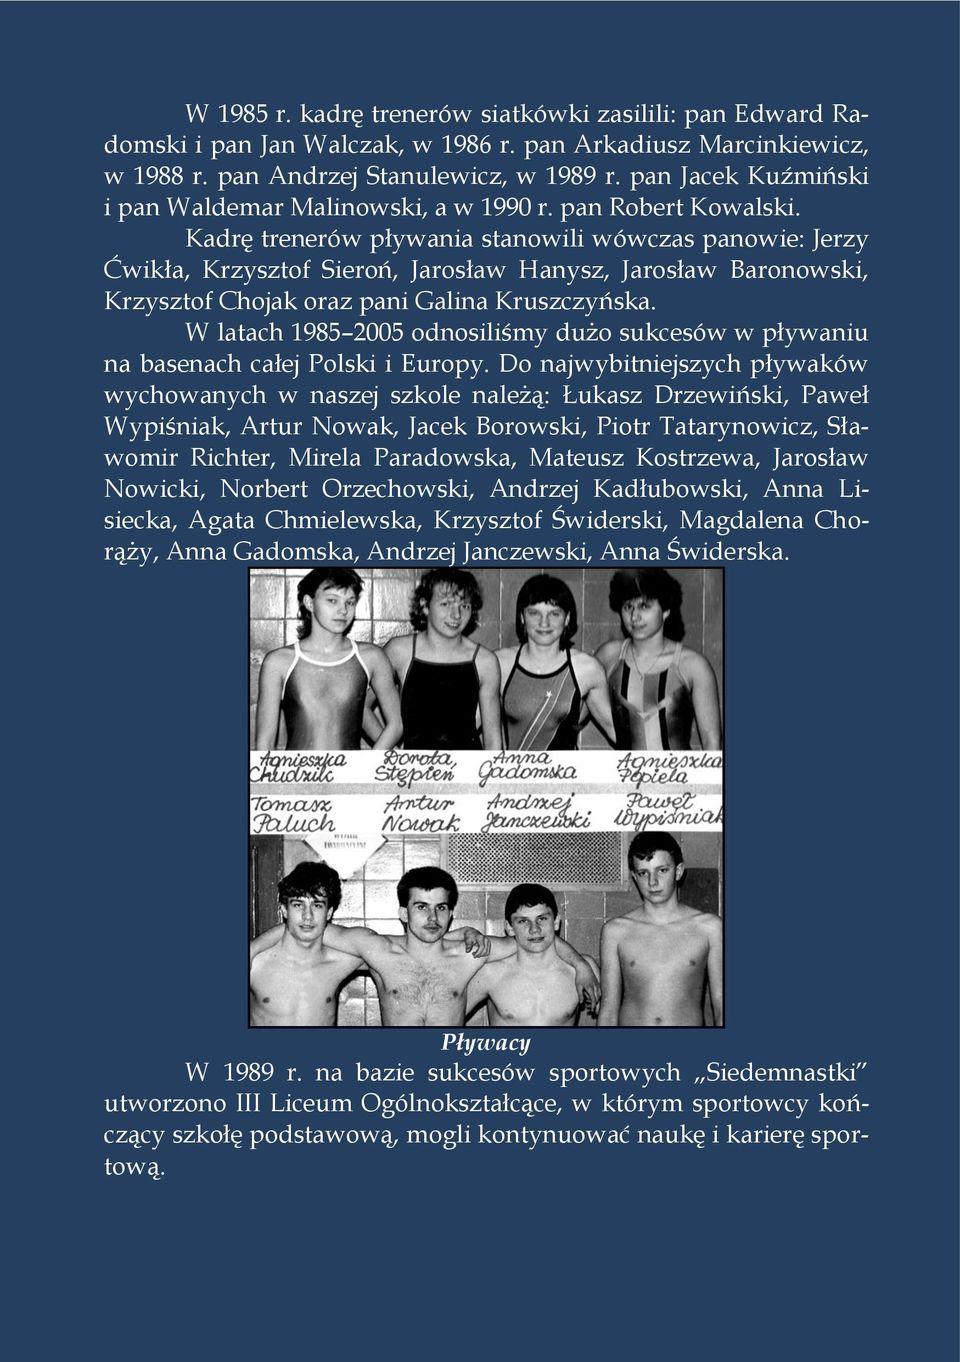 Kadrę trenerów pływania stanowili wówczas panowie: Jerzy Ćwikła, Krzysztof Sieroń, Jarosław Hanysz, Jarosław Baronowski, Krzysztof Chojak oraz pani Galina Kruszczyńska.